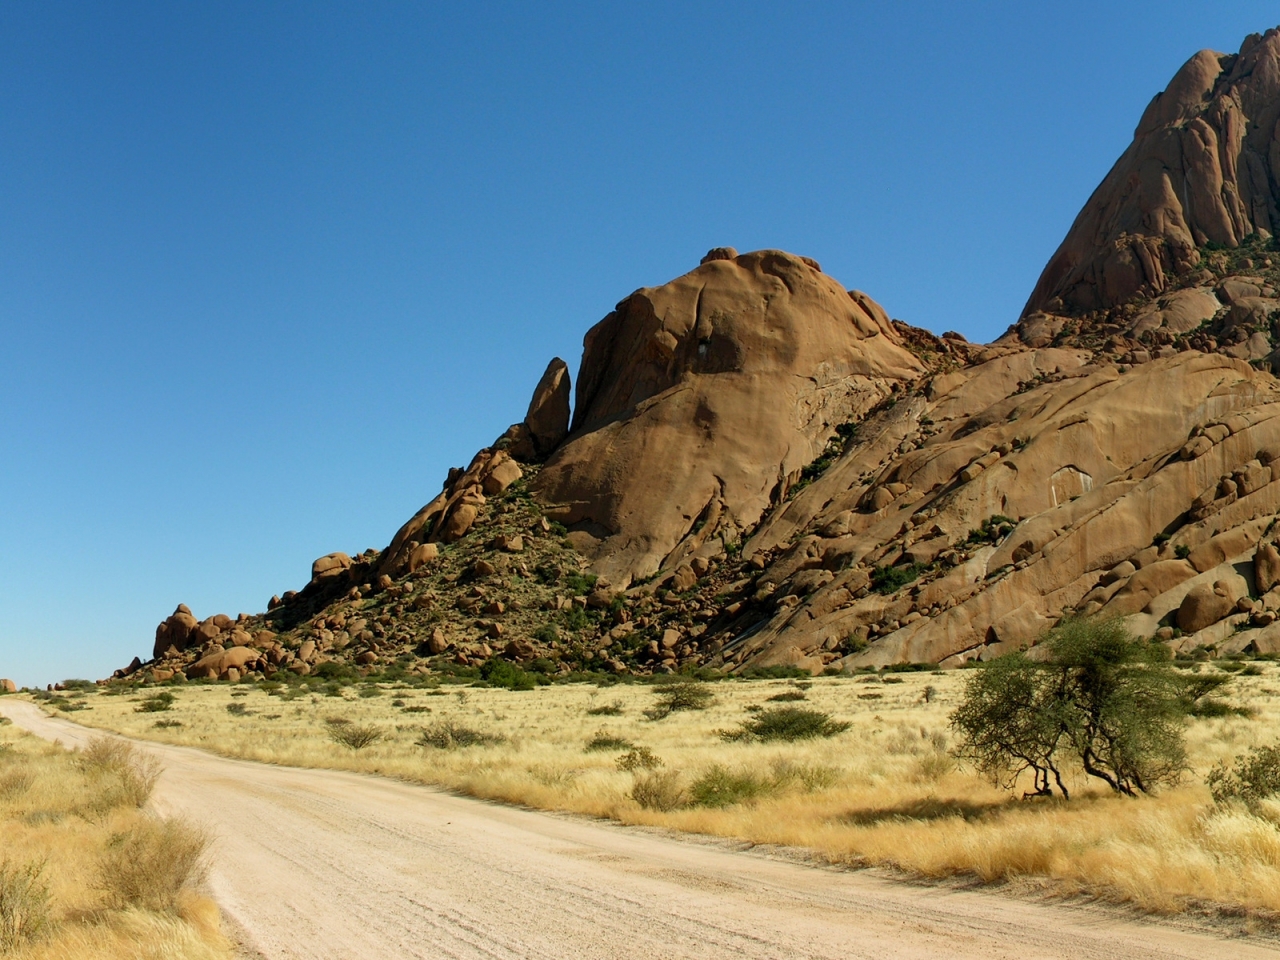 Road in Desert for 1280 x 960 resolution